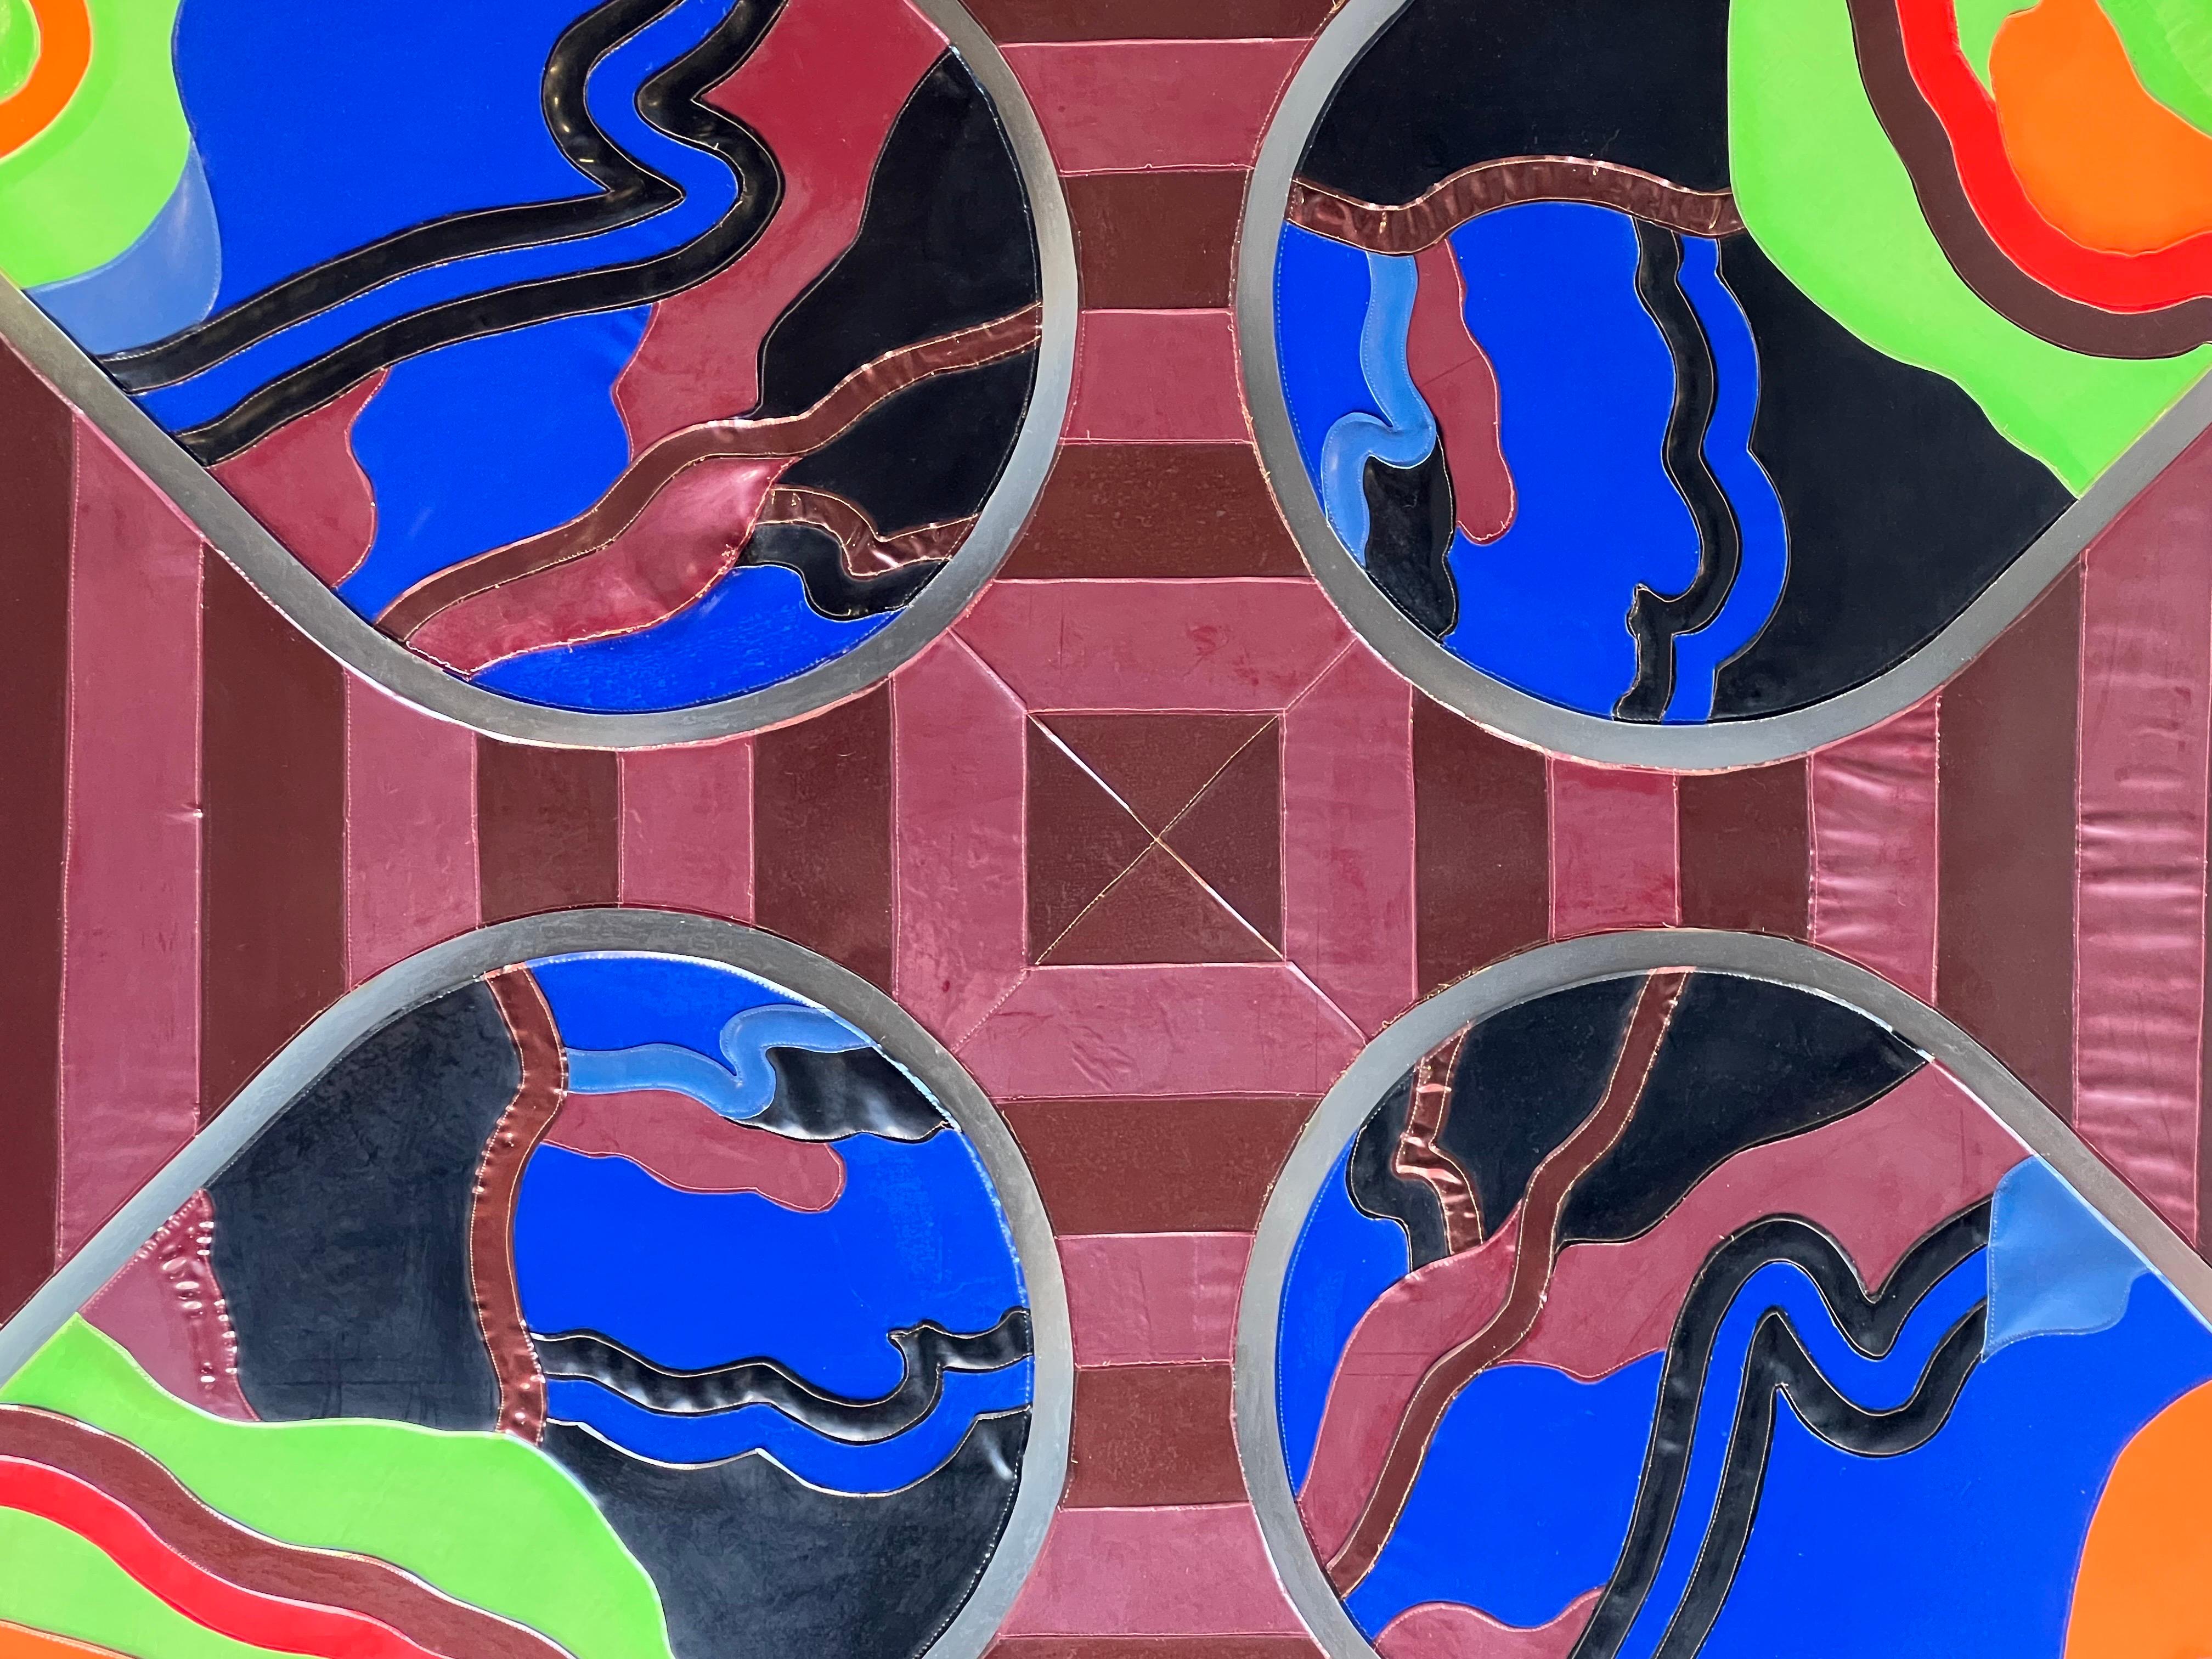 Œuvre d'art vintage de l'artiste américain Thomas Nawrocki. Intitulé Kaleidoscope, Steeple Scope Window. Cette œuvre encadrée à grande échelle est réalisée à partir de vinyles colorés cousus ensemble pour créer un portail psychédélique. Le fond est